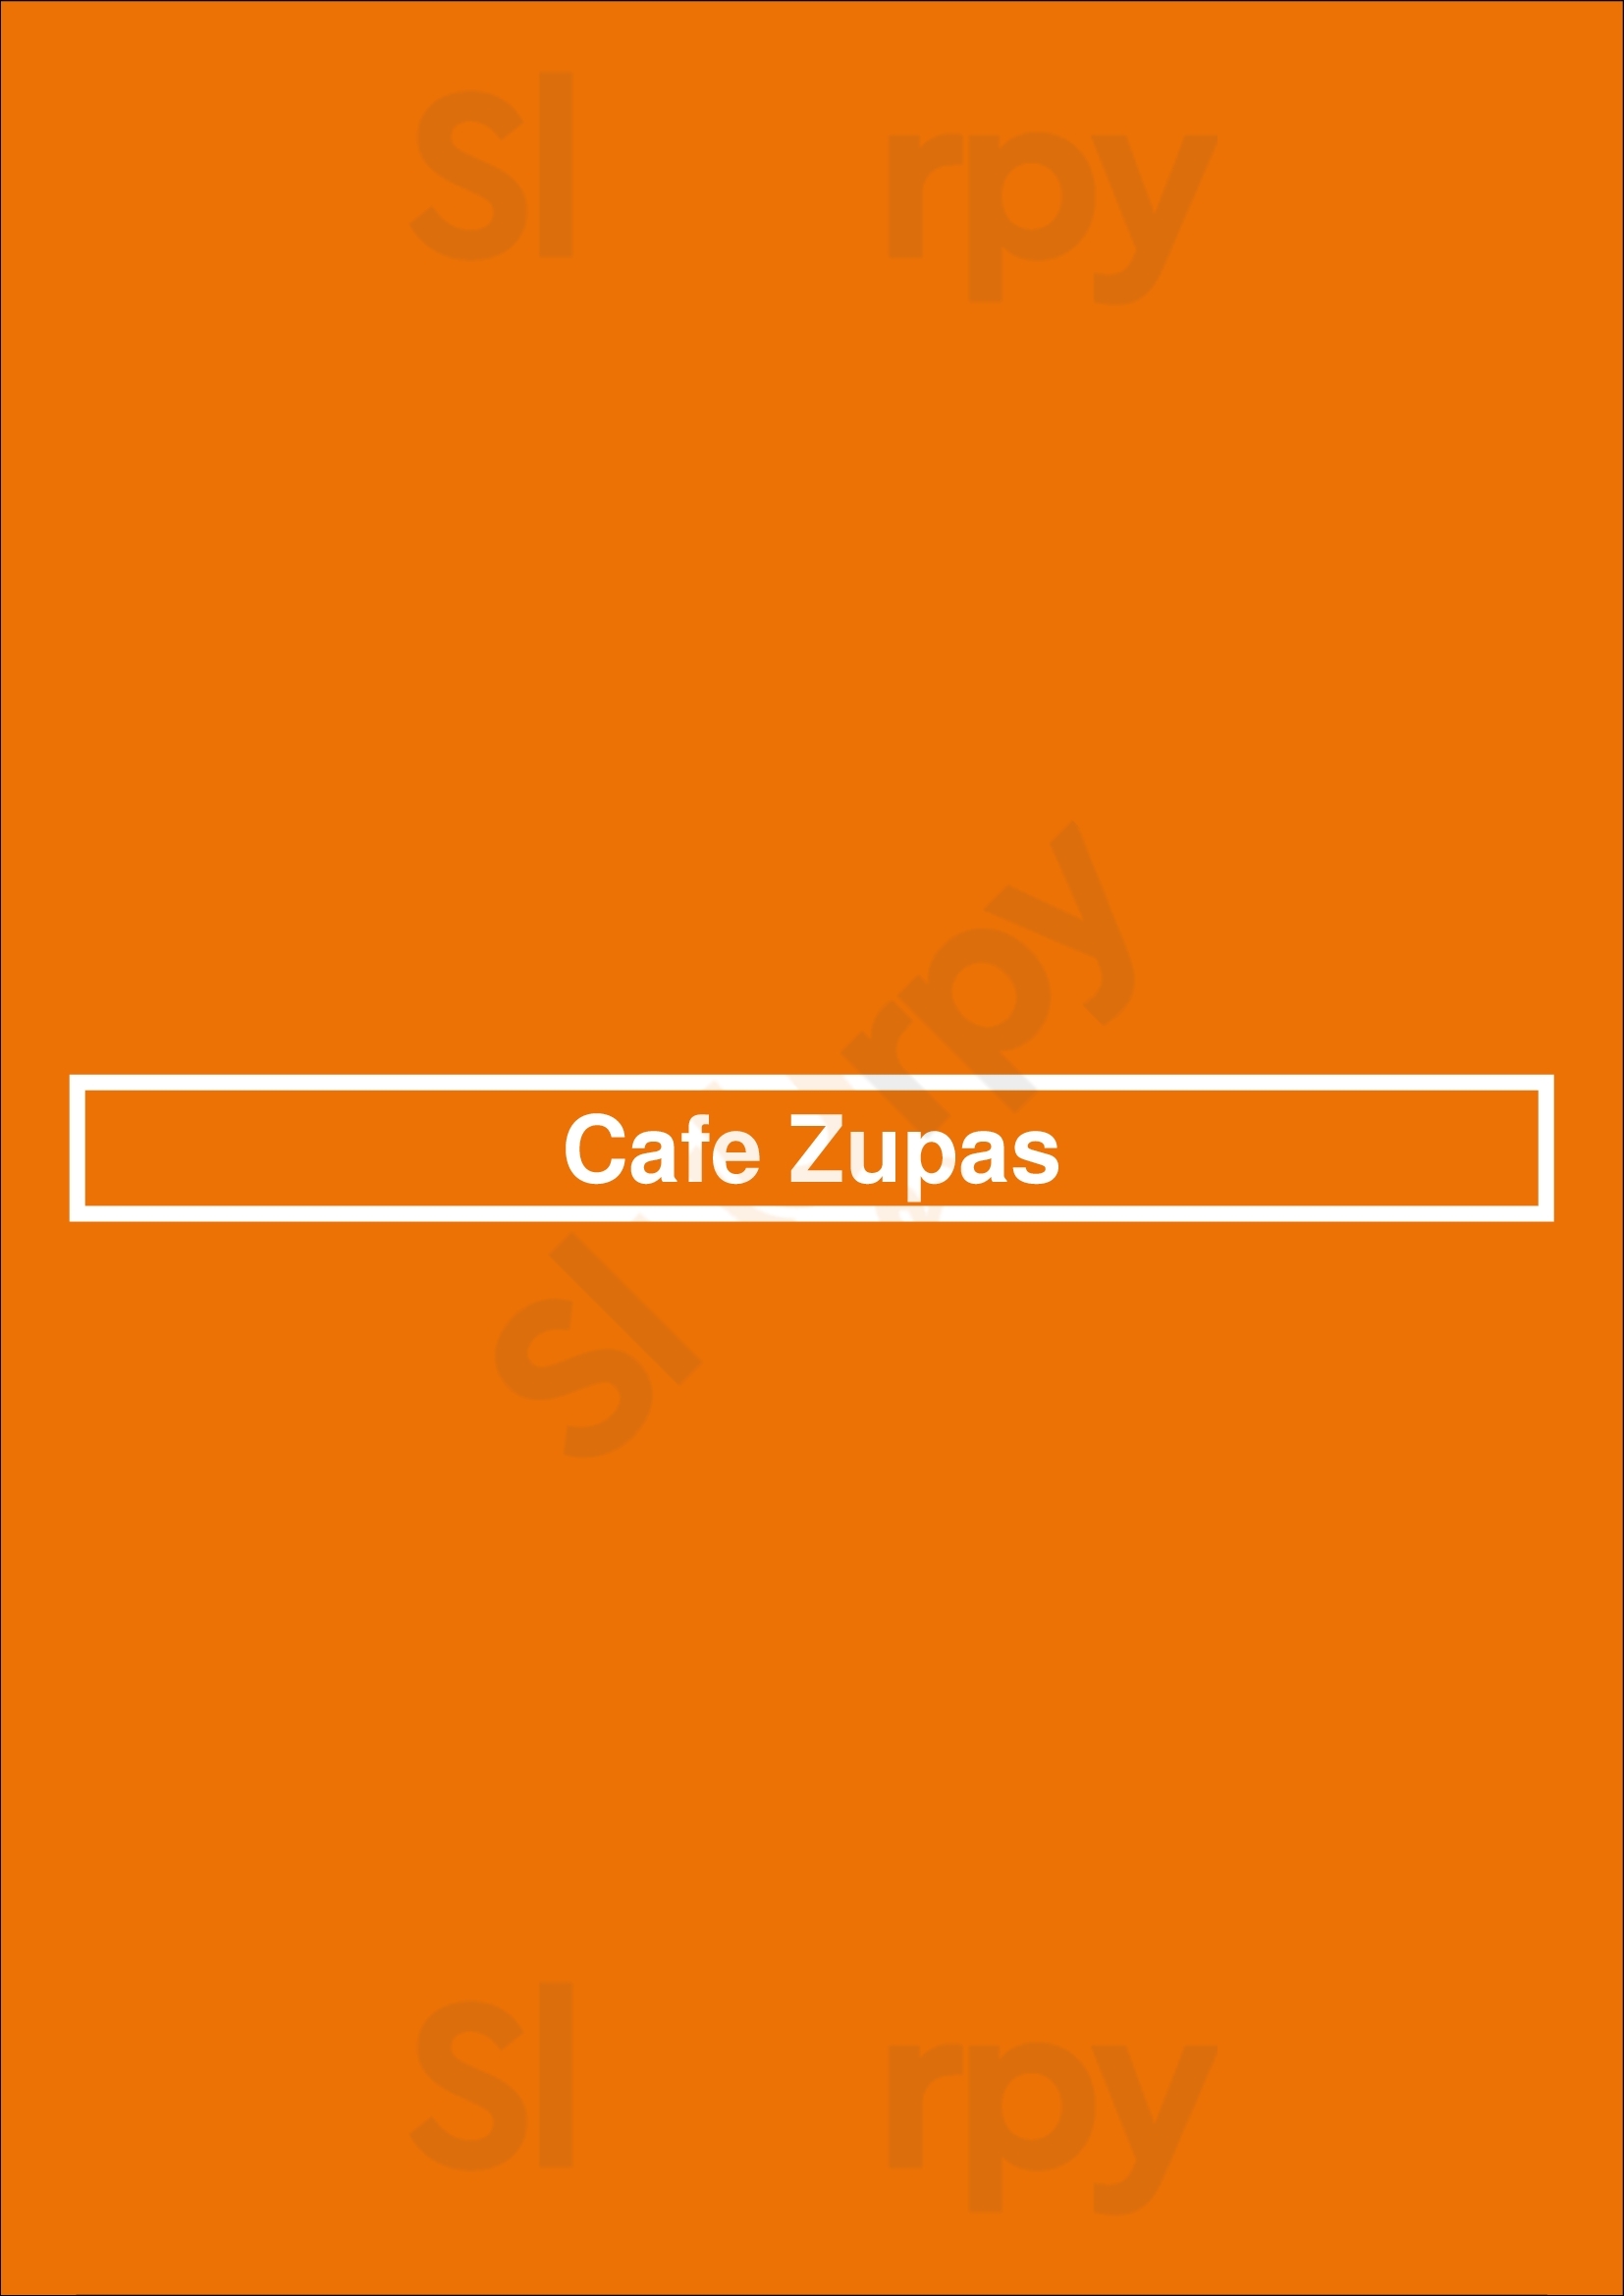 Cafe Zupas Columbus Menu - 1